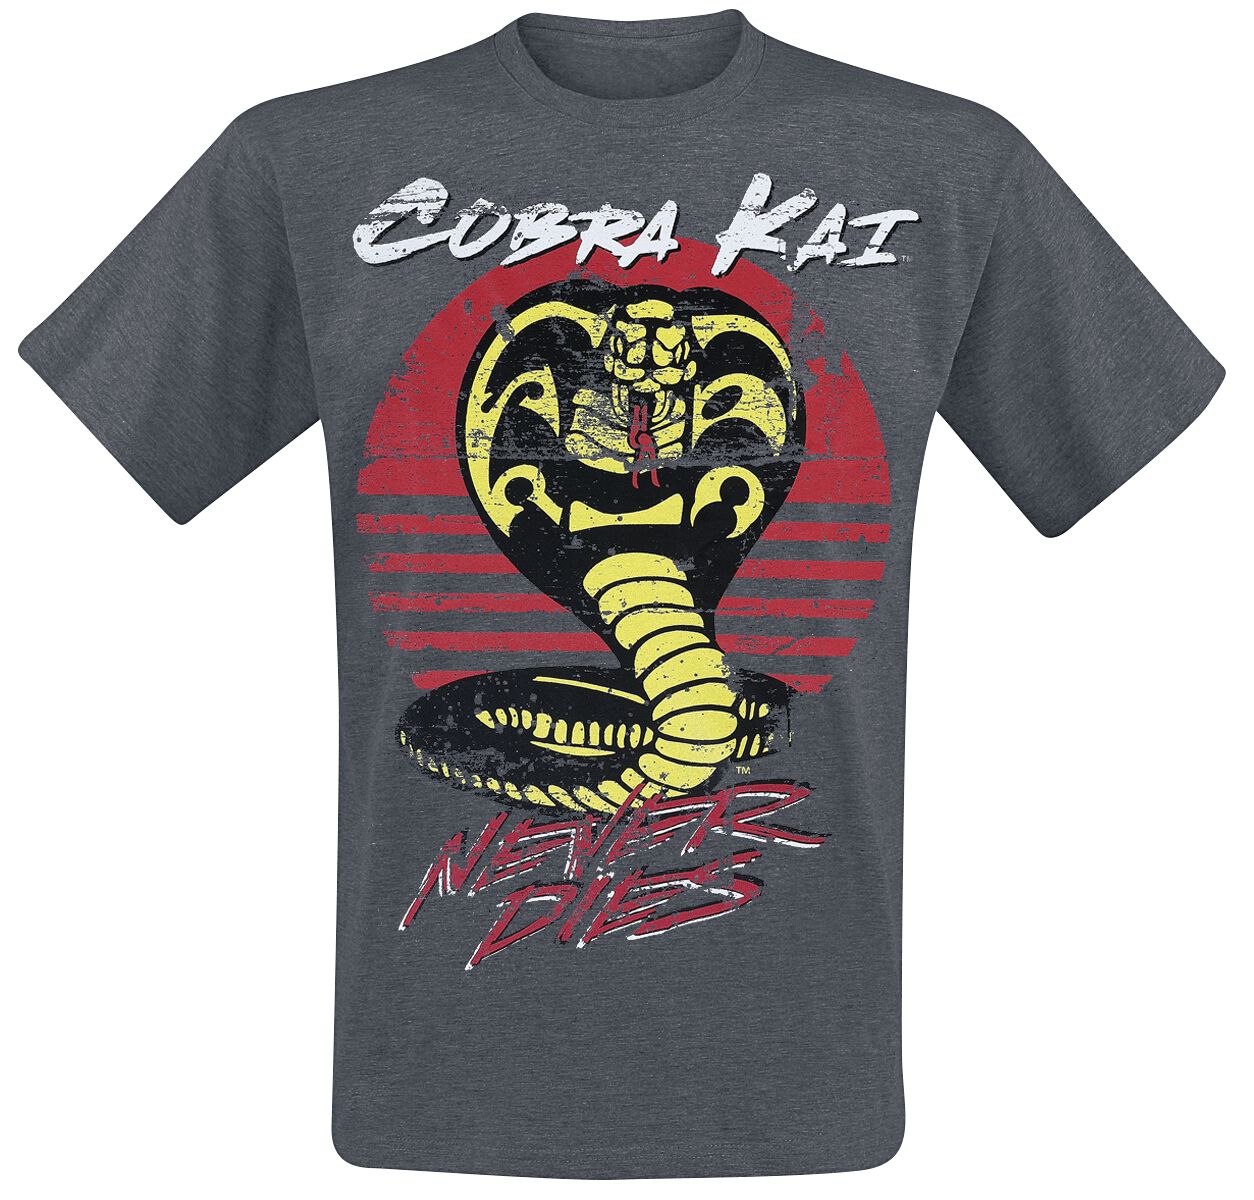 Cobra Kai Never Dies! T-Shirt grau in L